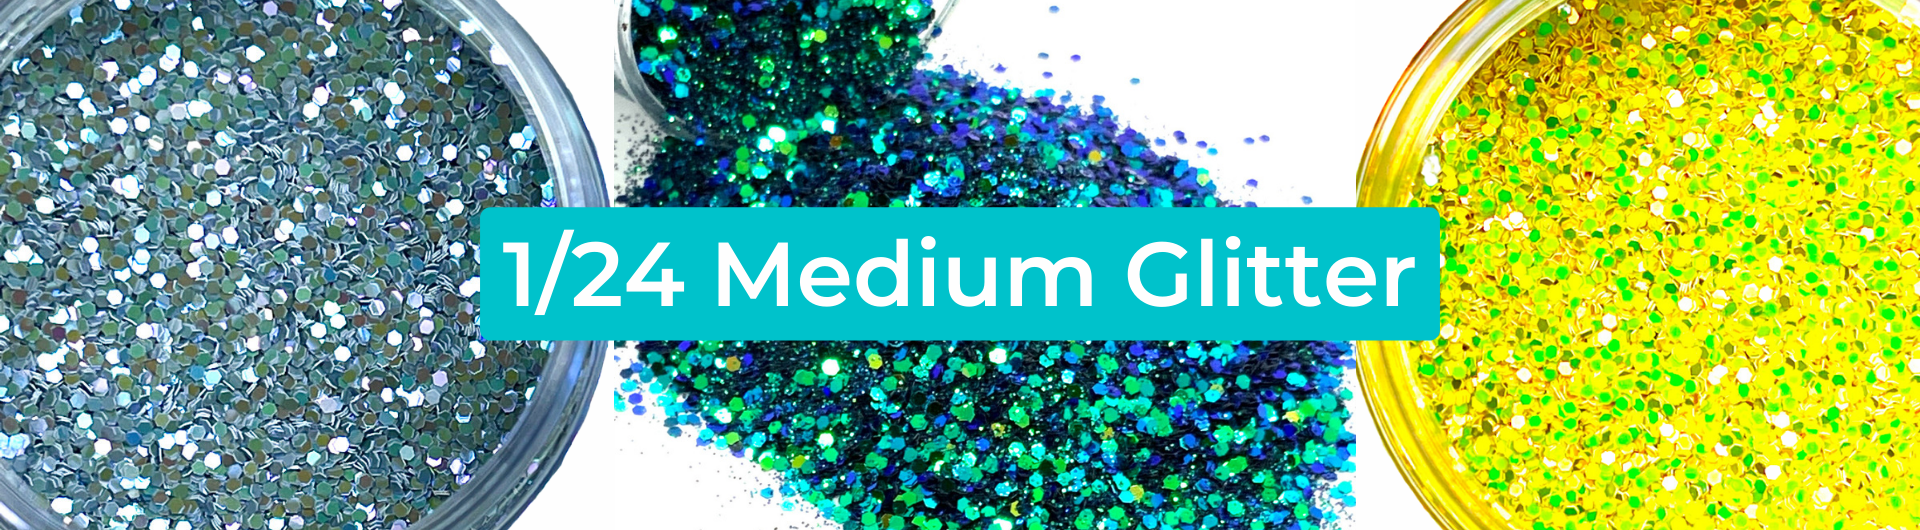 1/24 Medium Glitter